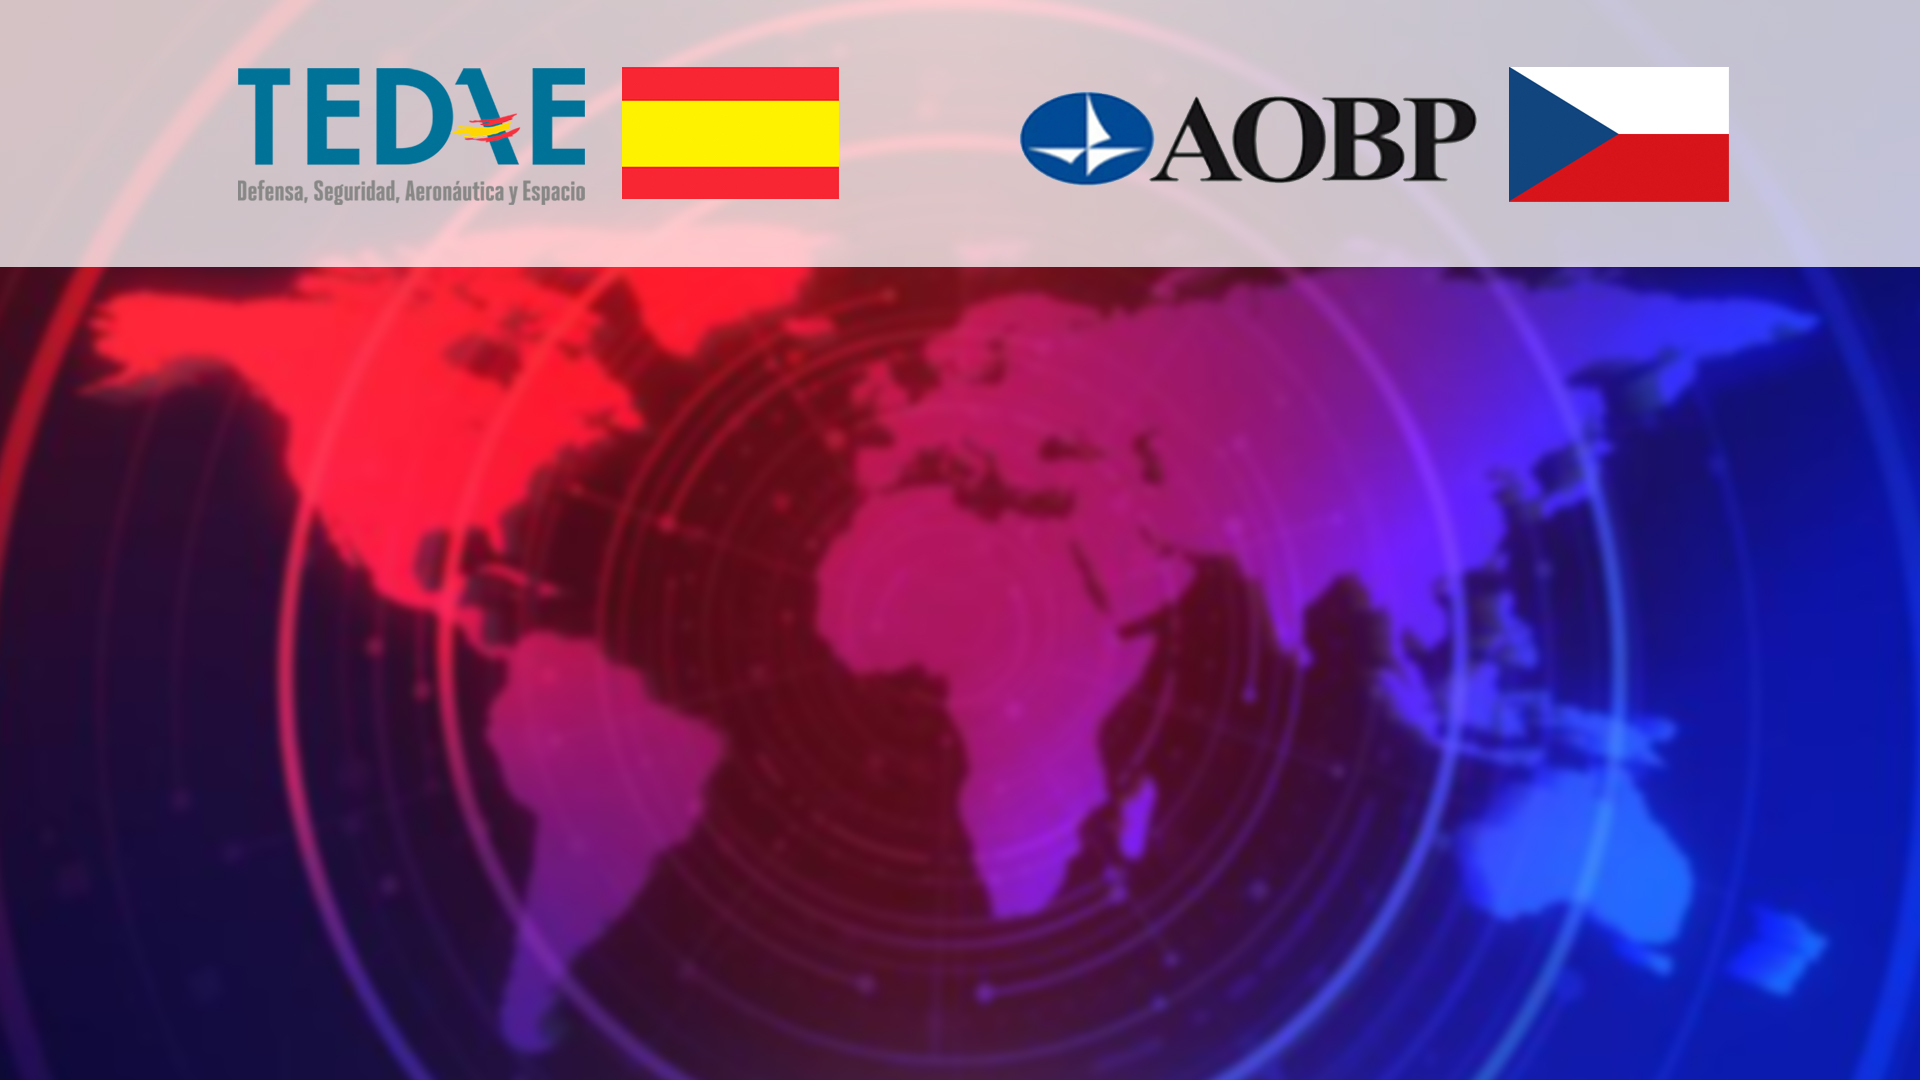 TEDAE firma un acuerdo de colaboración con la Asociación de la Industria de Defensa y Seguridad de la República Checa (AOBP)